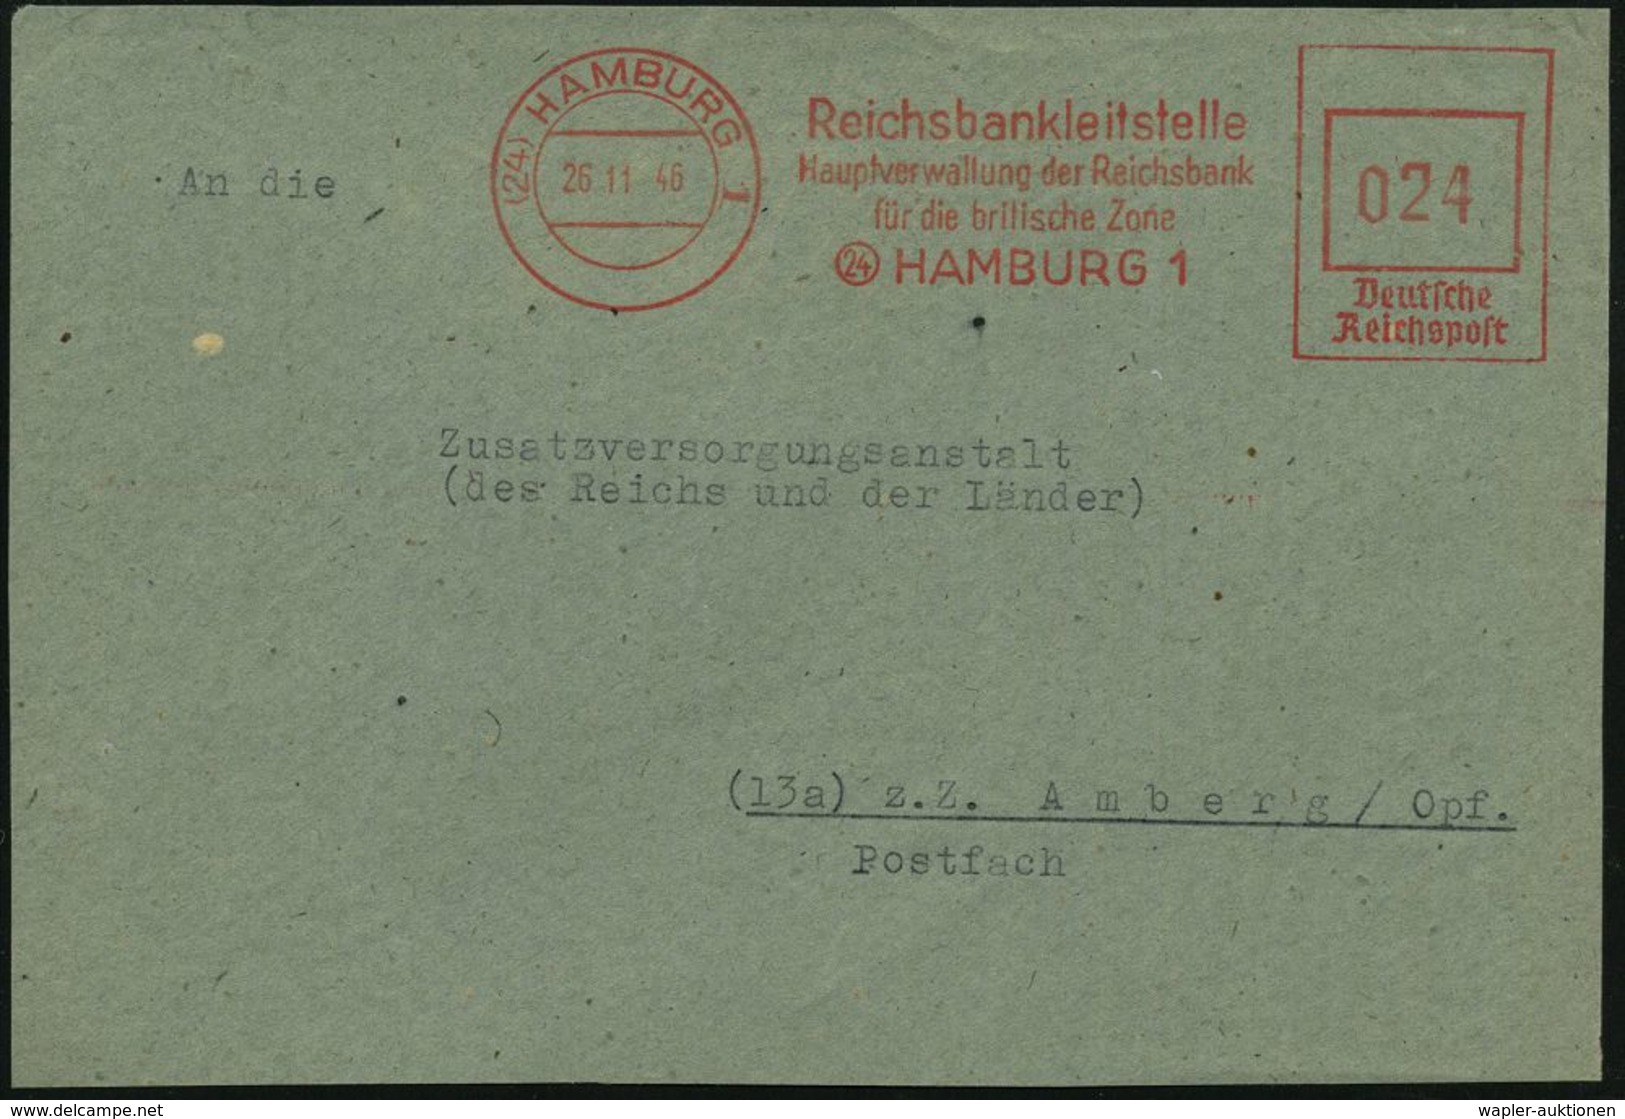 (24) HAMBURG 1/ Reichsbankleitstelle/ Hauptverwaltung Der Reichsbank/ Für Die Britische Zone 1946 (26.11.) Seltener, Apt - Non Classés